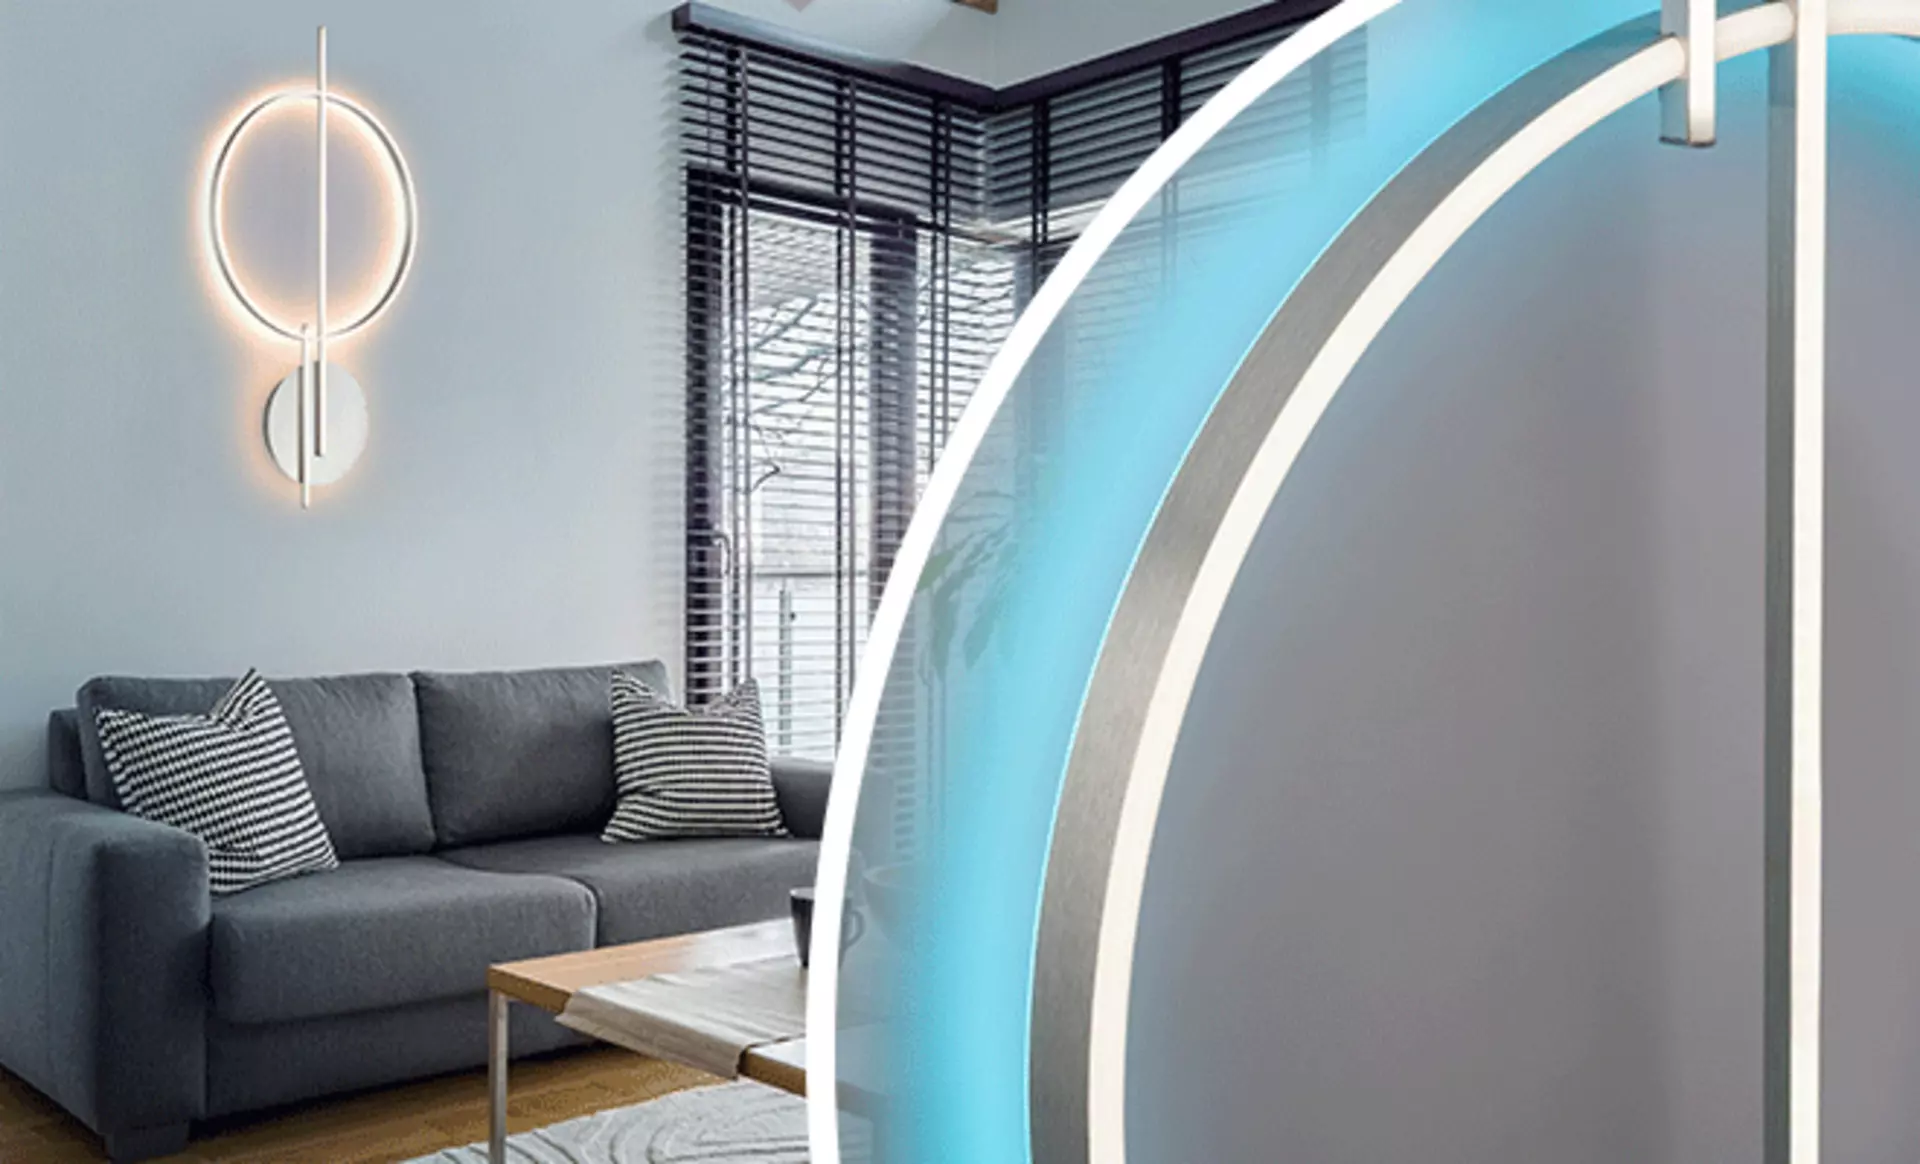 LED Designleuchte für die Wand spendet indirektes Licht im gemütlichen Wohnzimmer